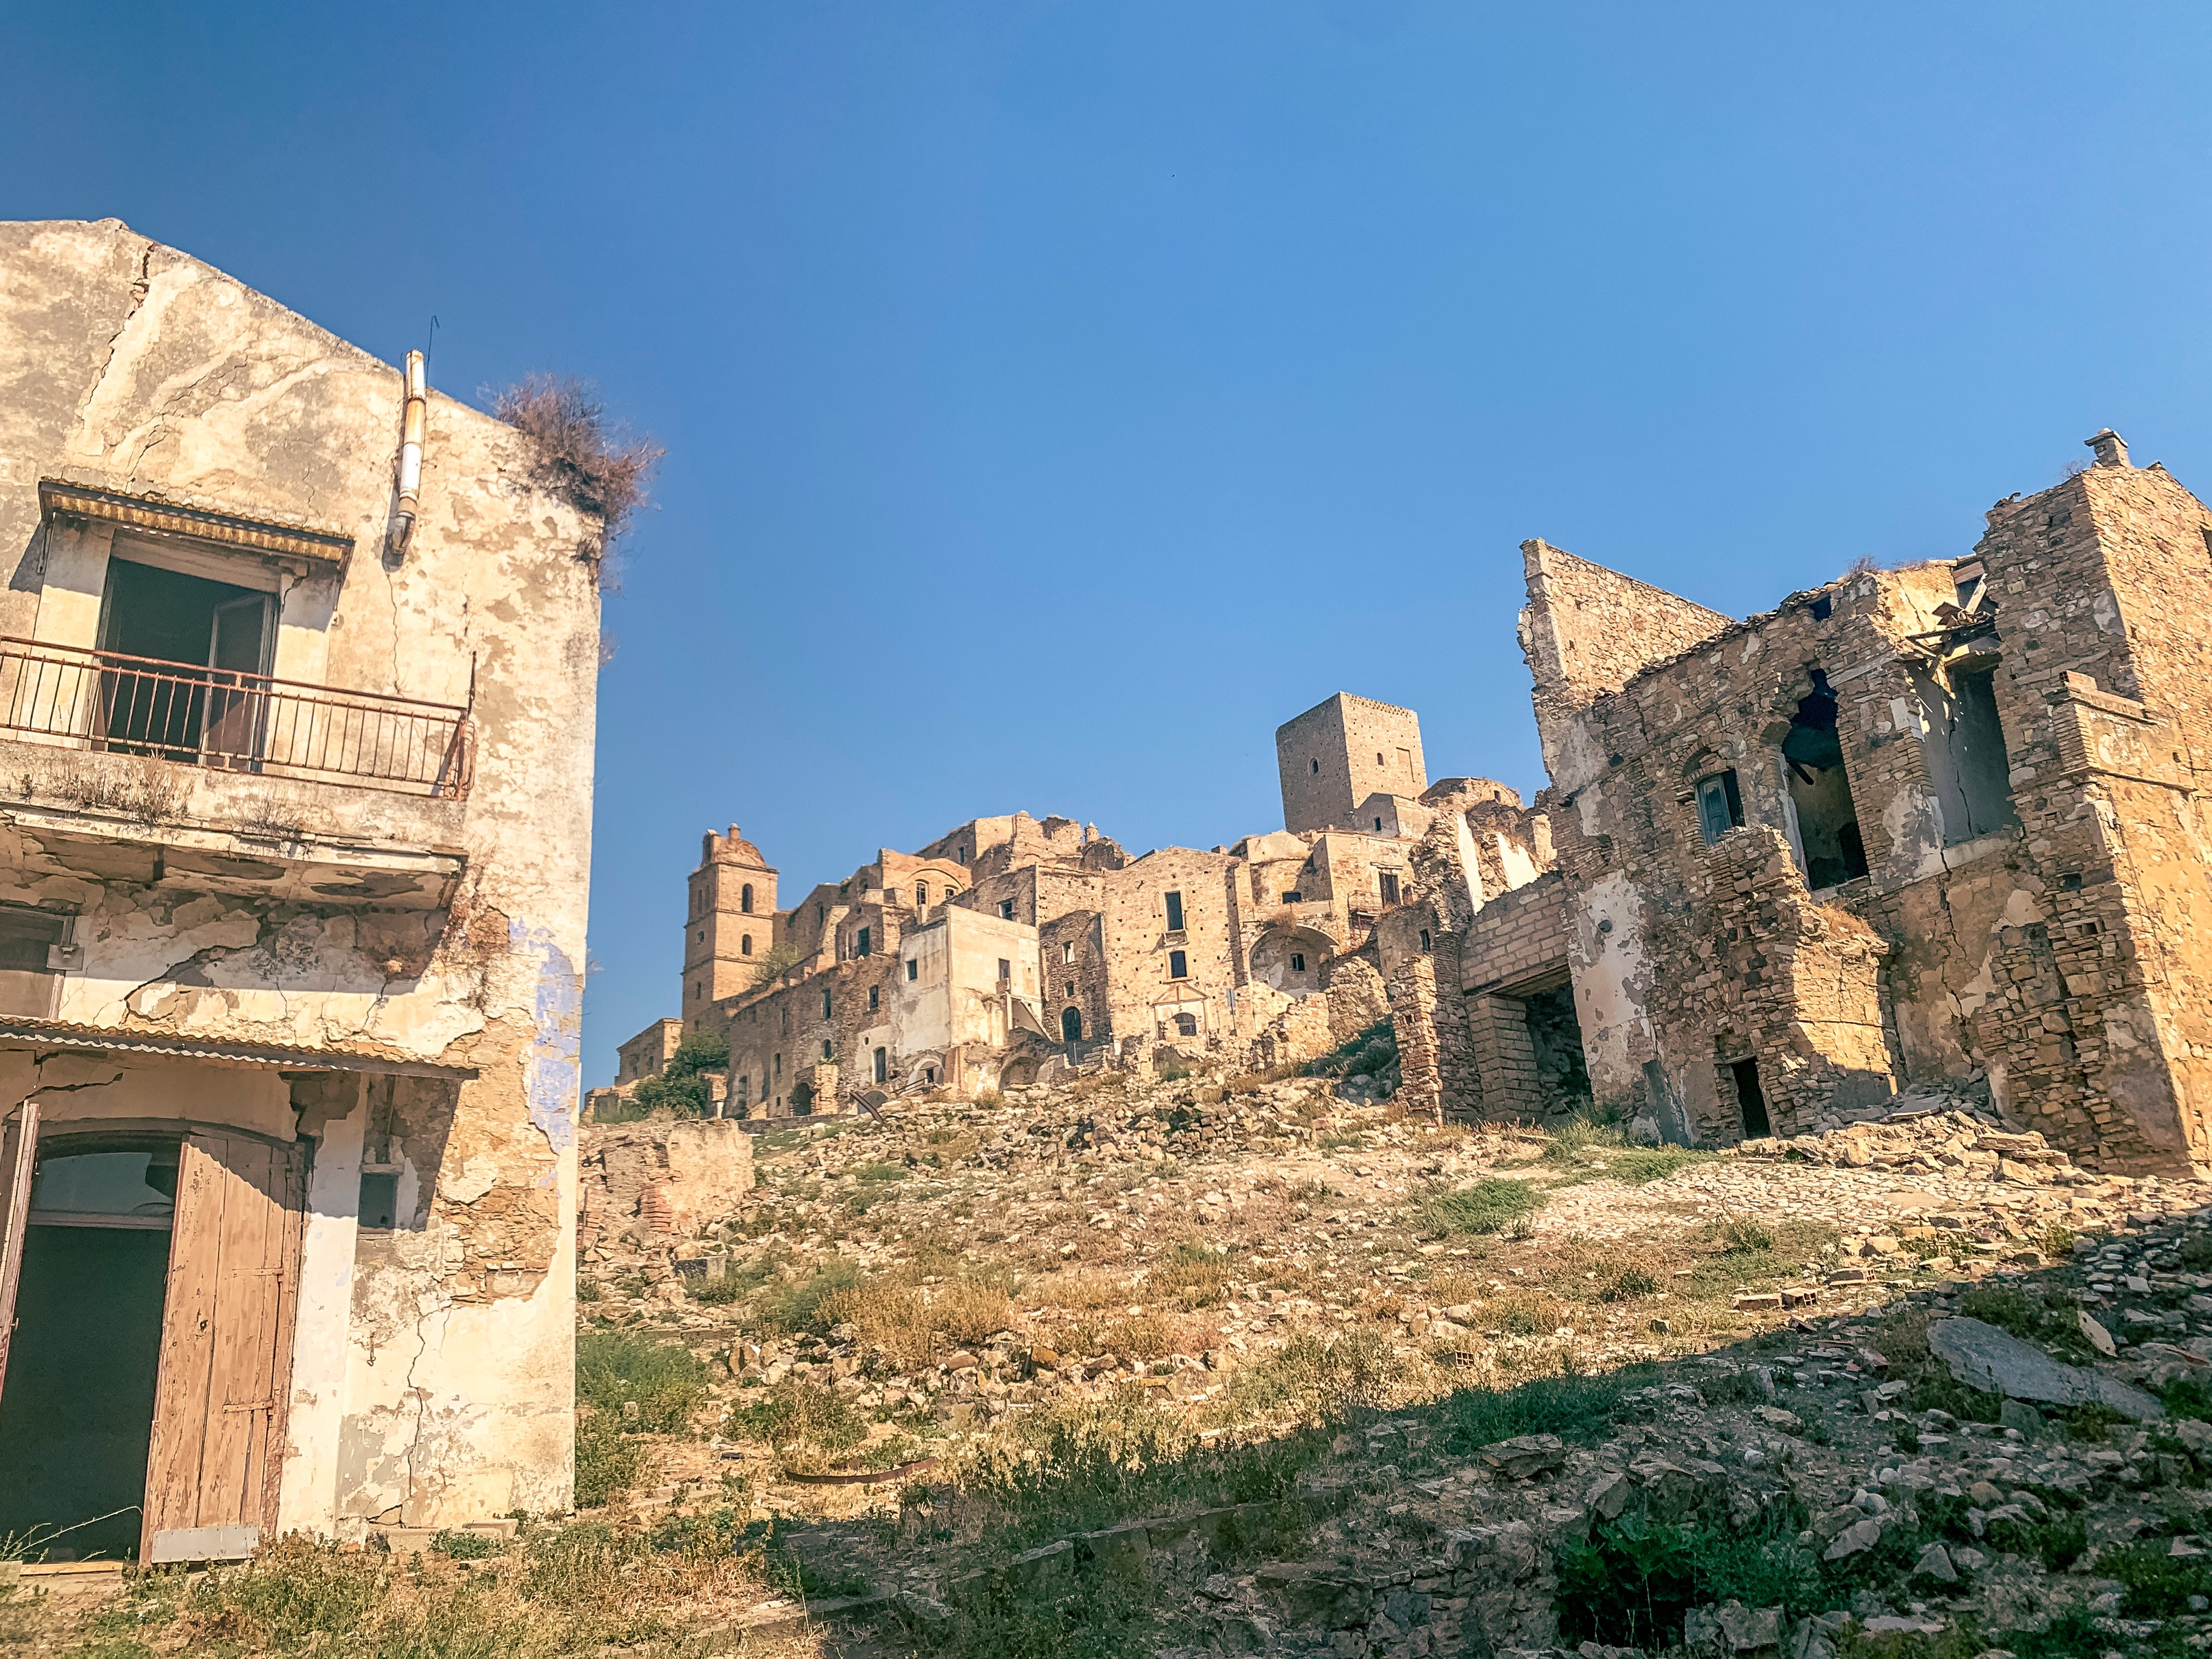 Cidades abandonadas: Craco, Itália